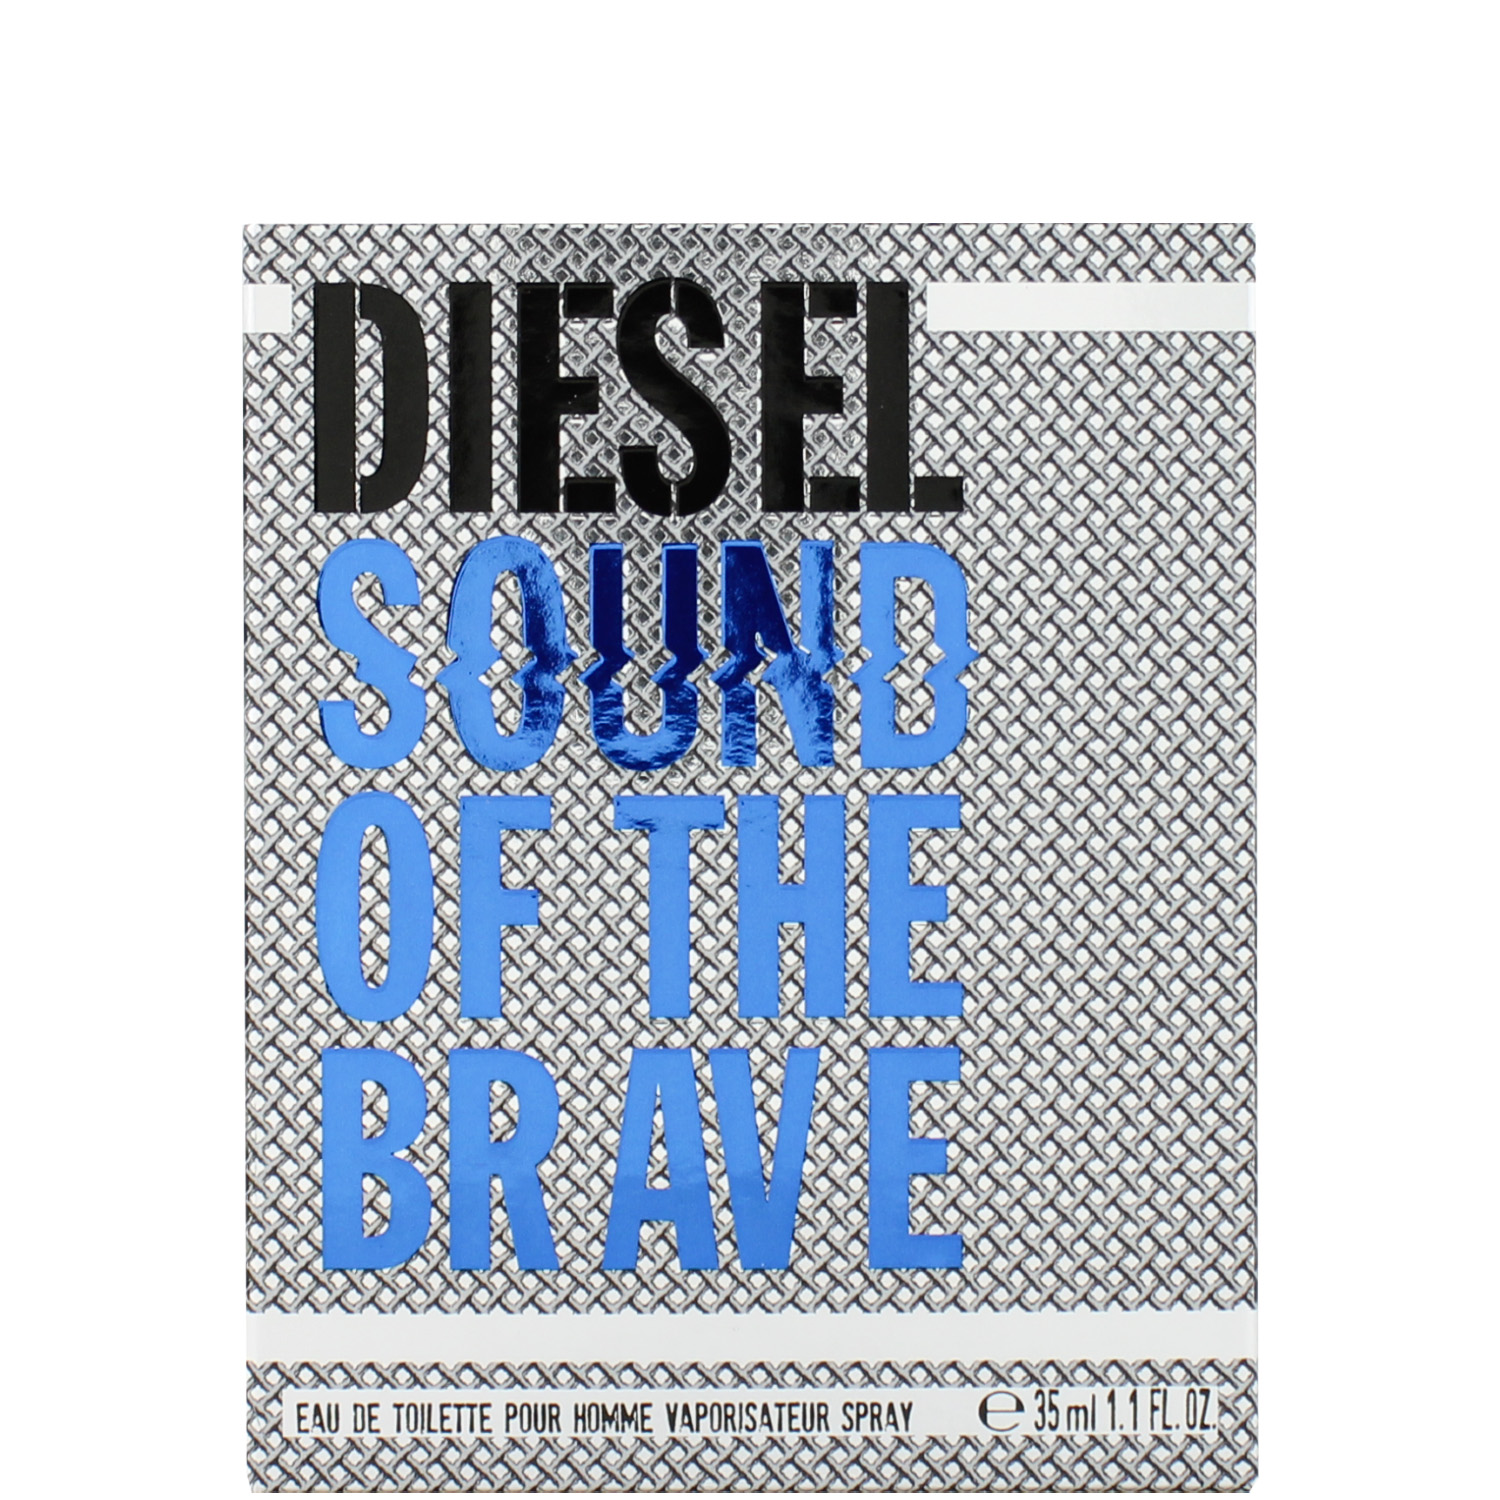 Diesel Sound of the Brave Eau de Toilette 35ml